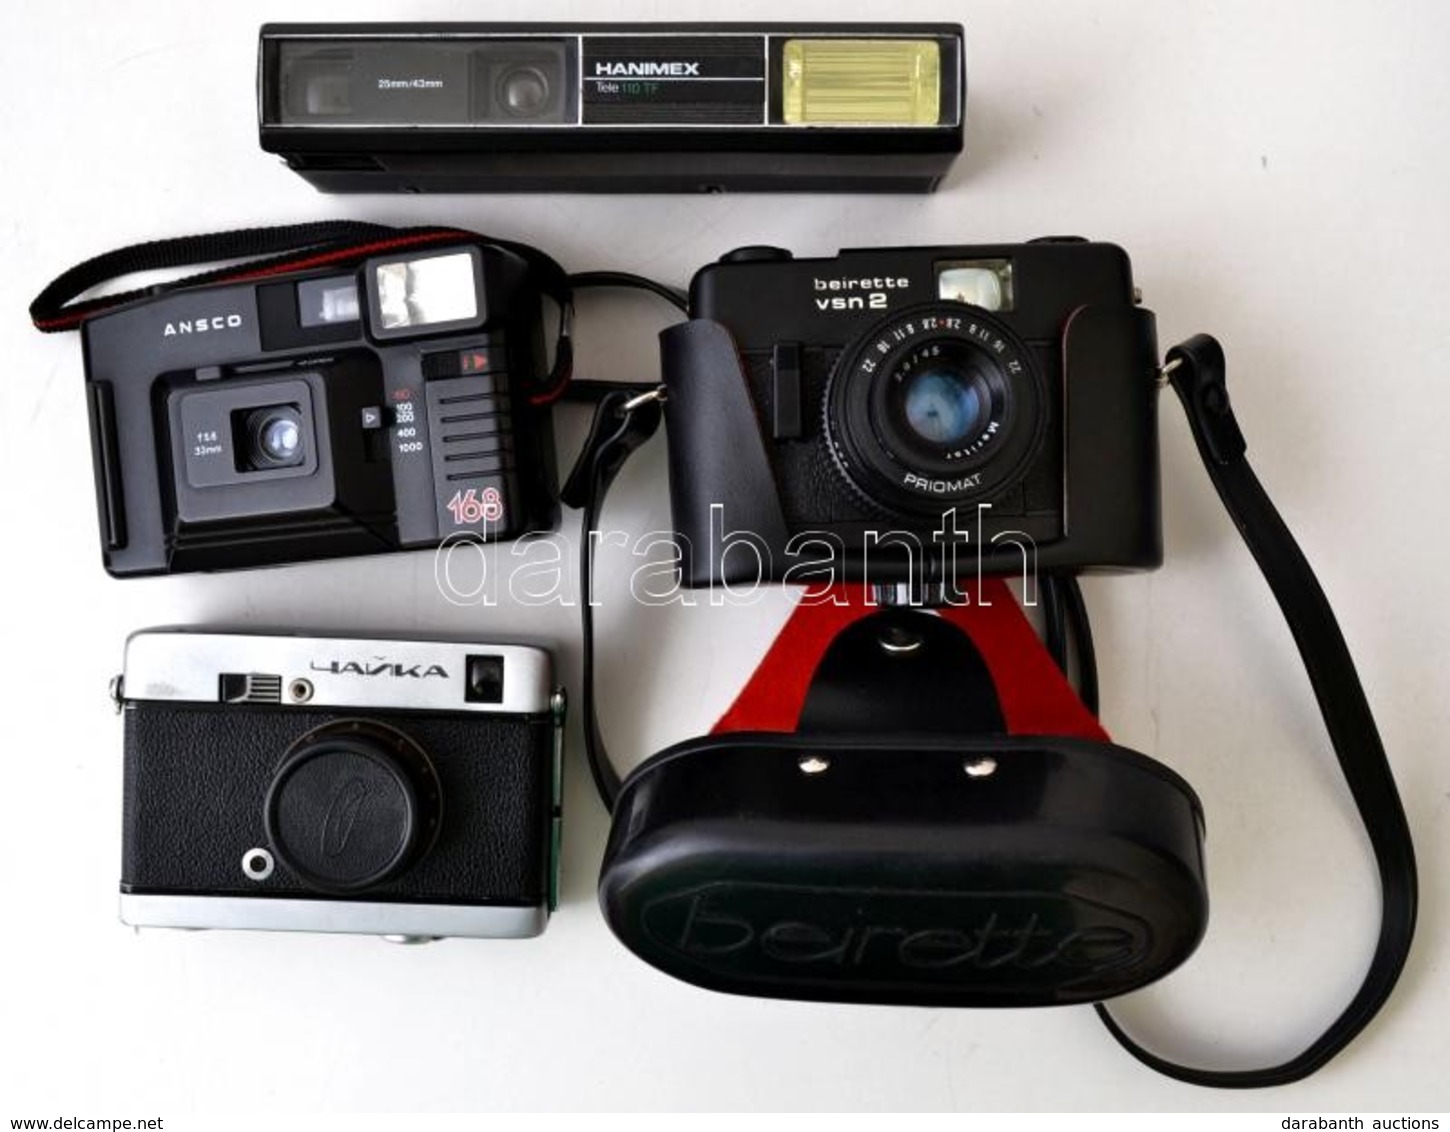 4 Db Fényképezőgép (Hanimex Tele 110 TF 25mm/45mm, Ansco 168 F5.6 33mm Objektívvel, Tokban, Csajka Industar-69 28mm F/2. - Fototoestellen